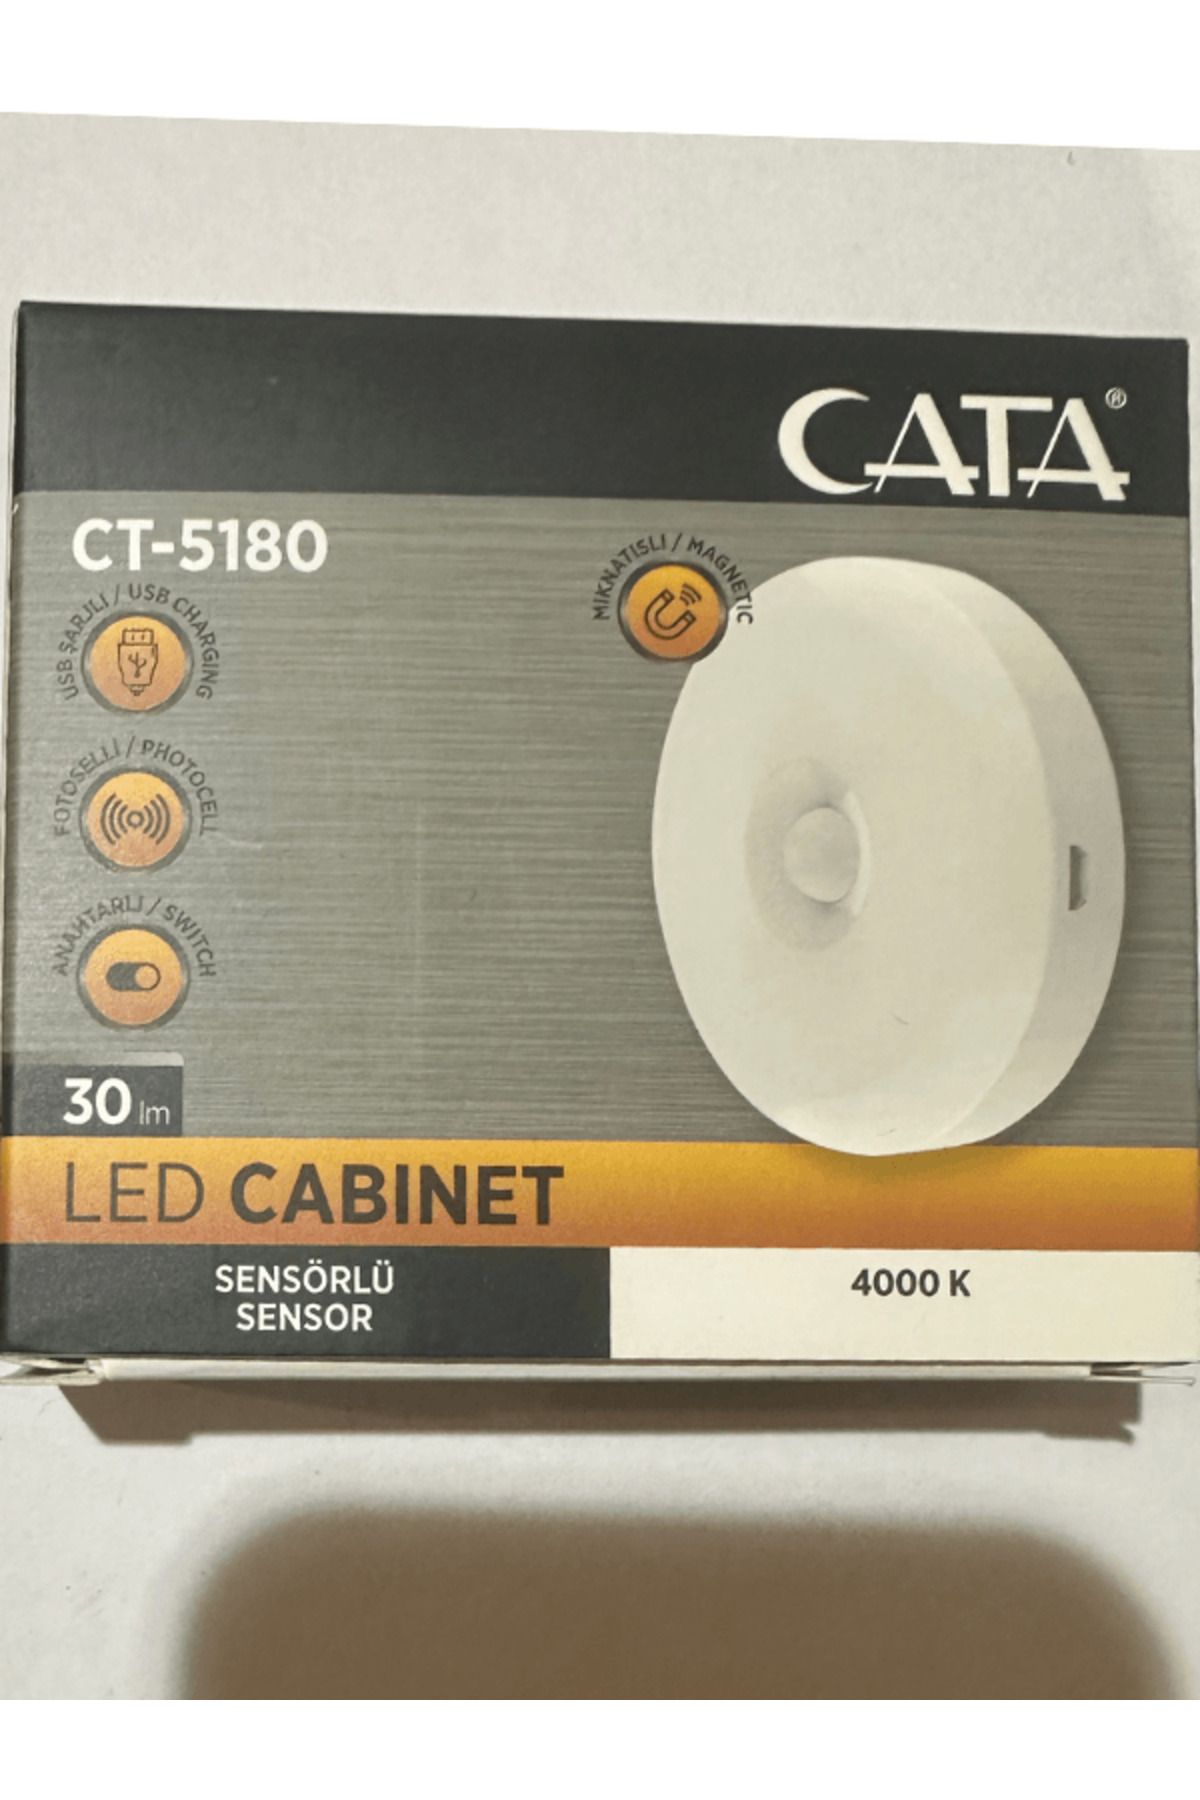 Cata CT-5180 4000K (Günışığı) Sensörlü Şarjlı Mıknatıslı Kabin Led Ampul (4 Adet)